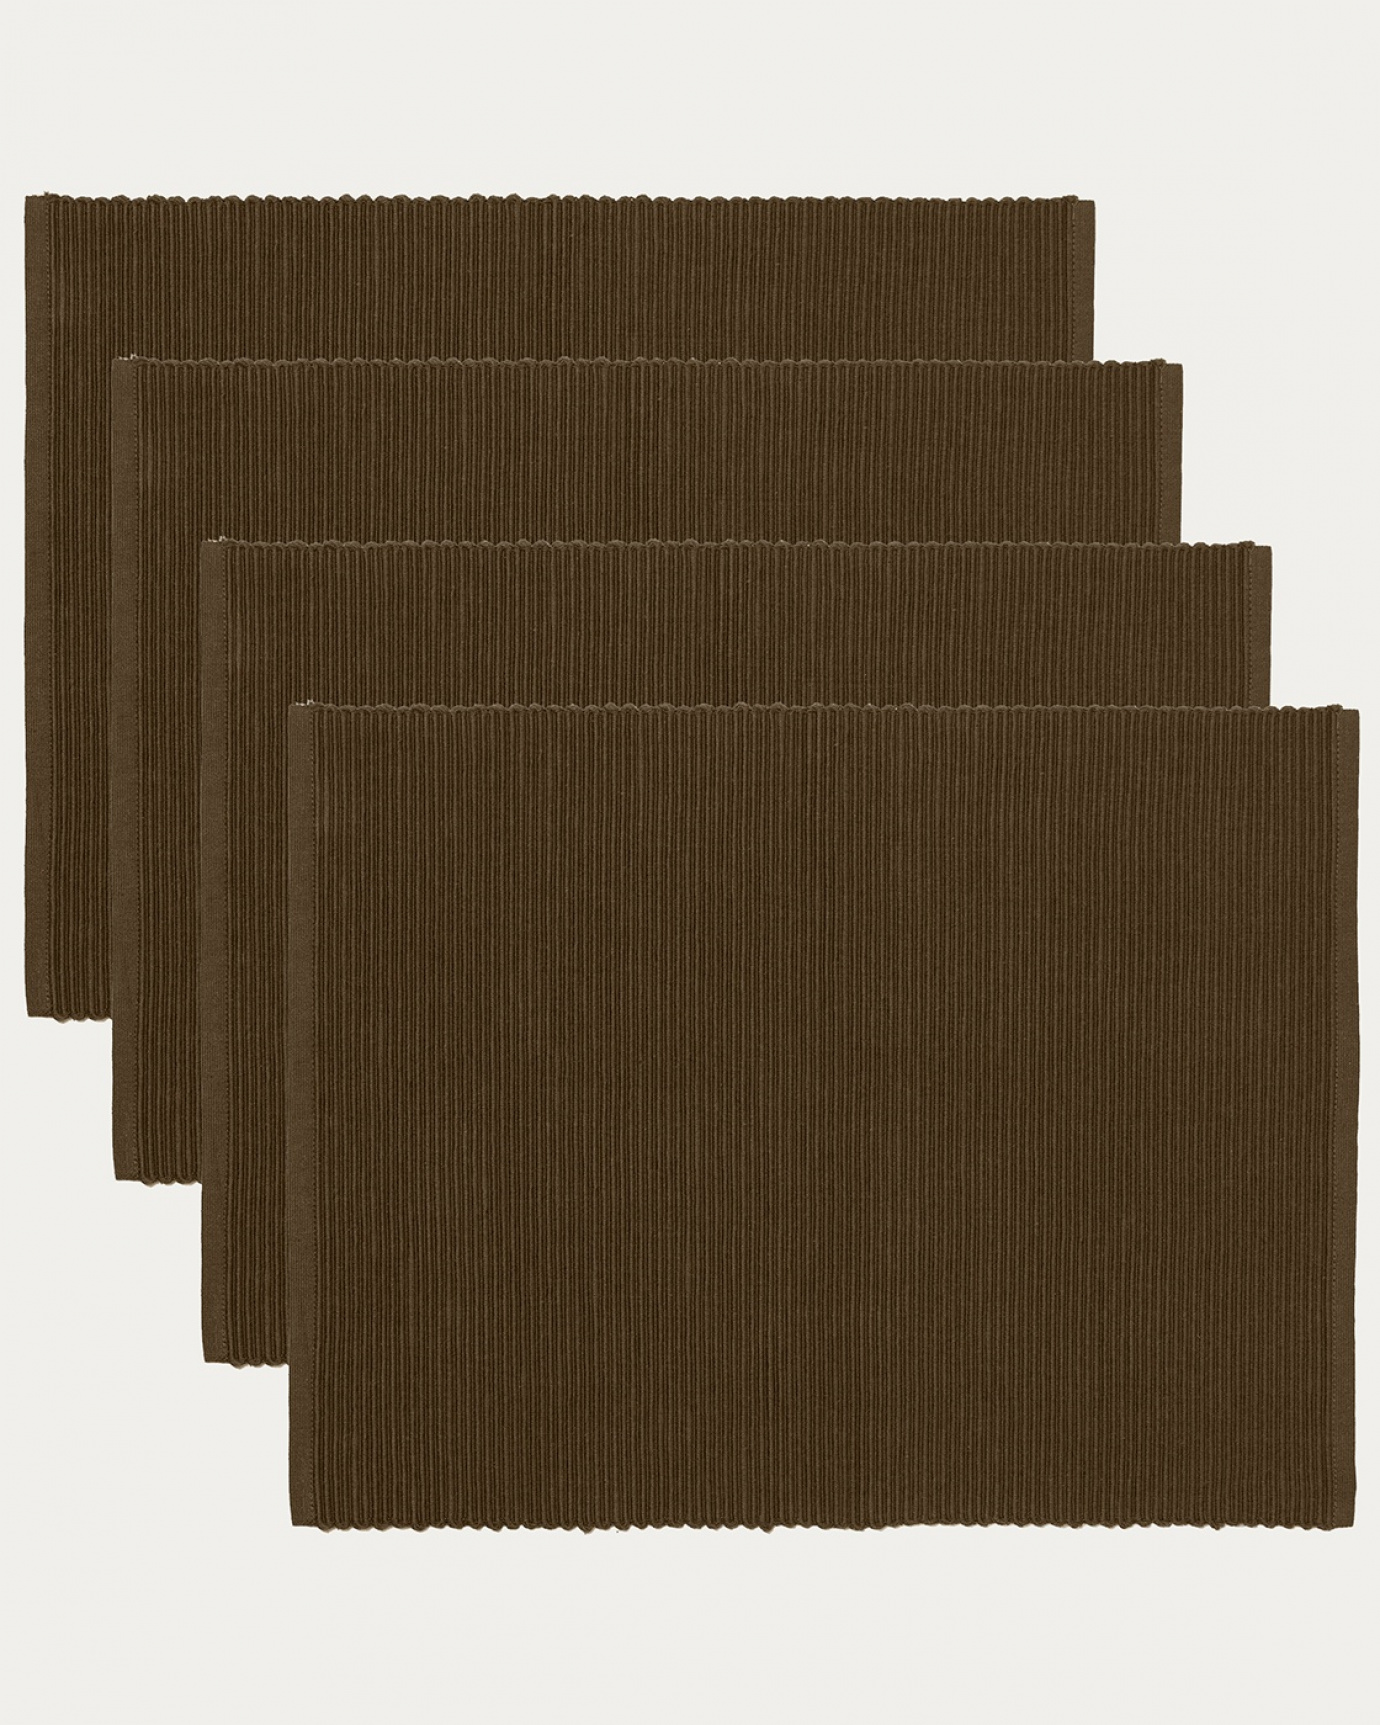 Immagine prodotto marrone orso tovaglietta UNI in morbido cotone a costine di qualità di LINUM DESIGN. Dimensioni 35x46 cm e venduto in 4-pezzi.